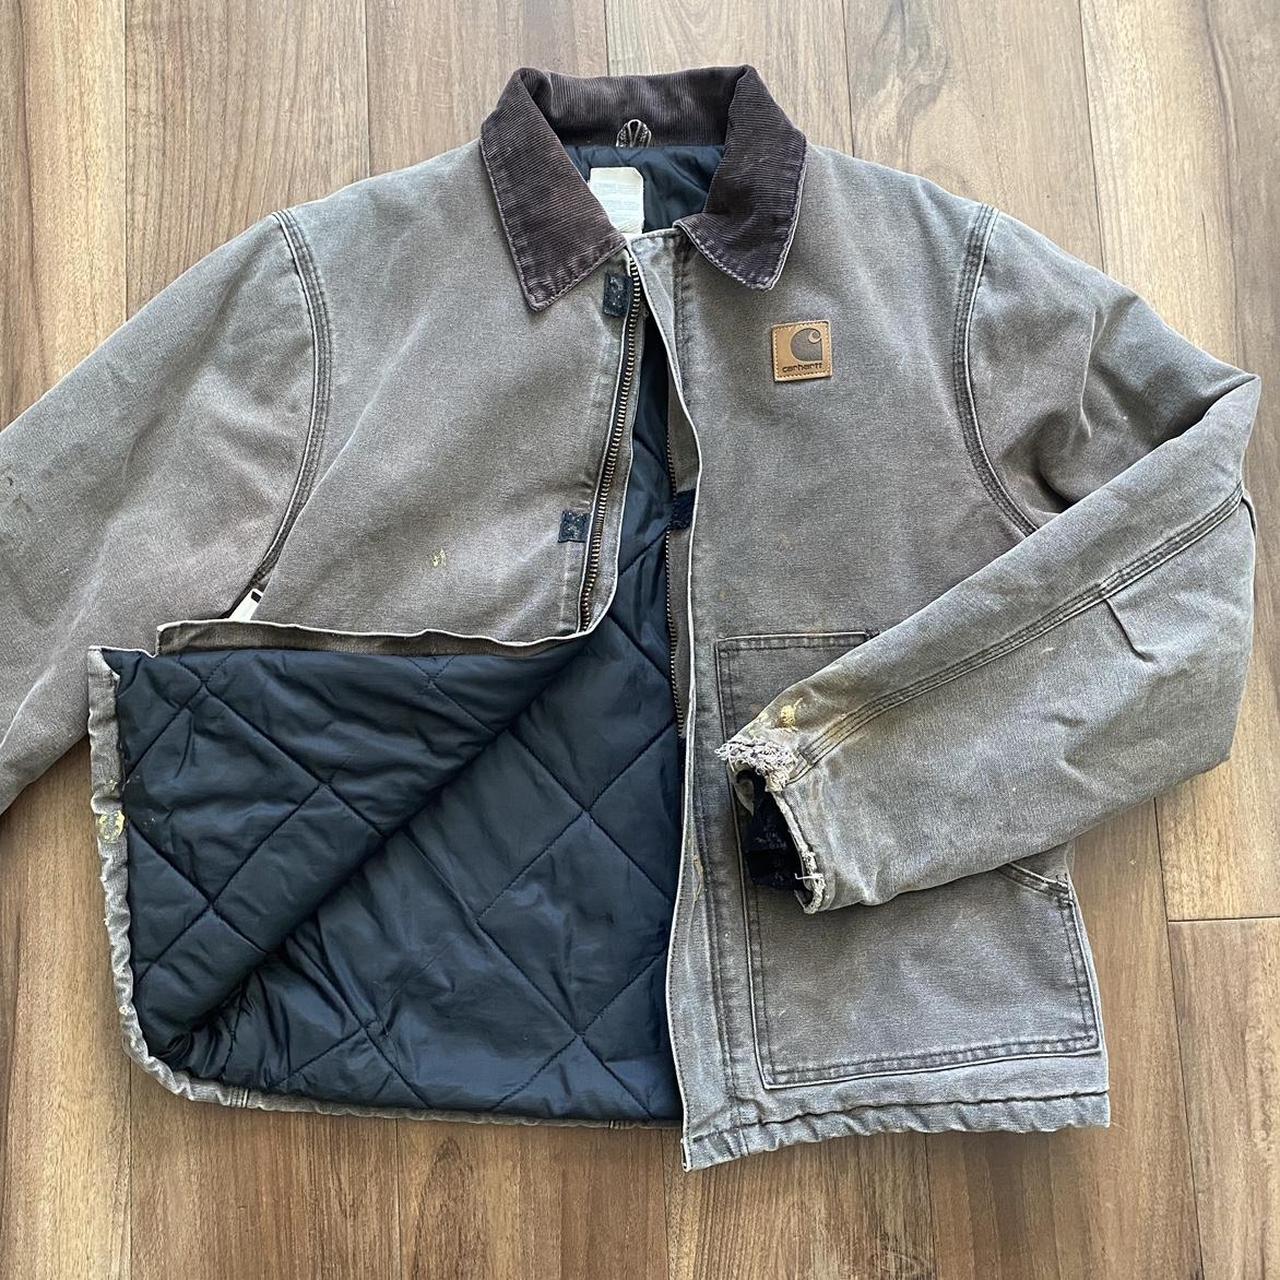 Vintage j22 carhartt jacket with beautiful brown... - Depop